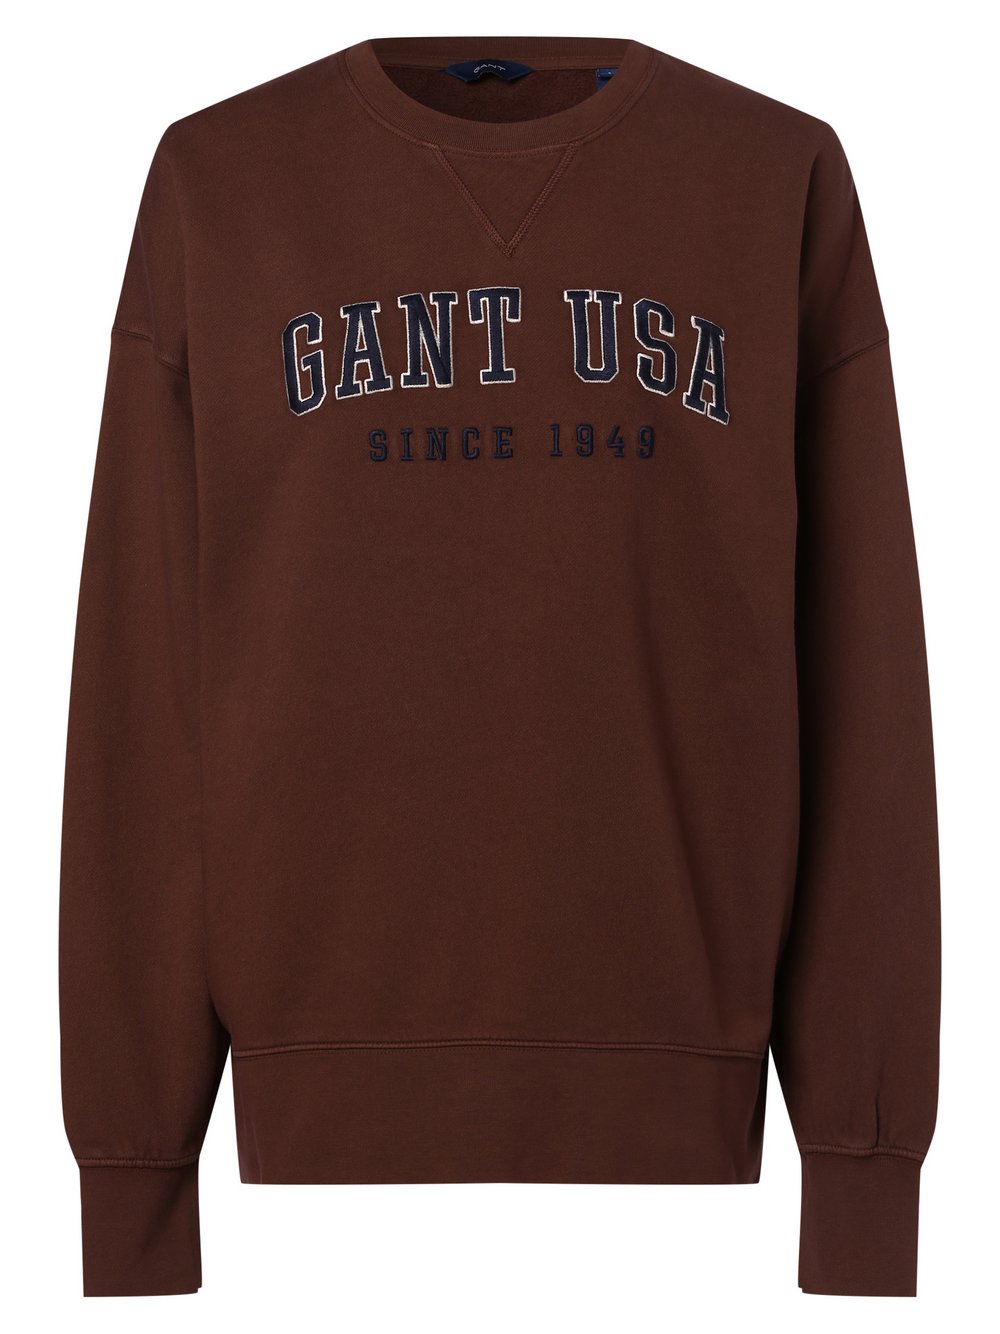 Gant - Damska bluza nierozpinana, brązowy